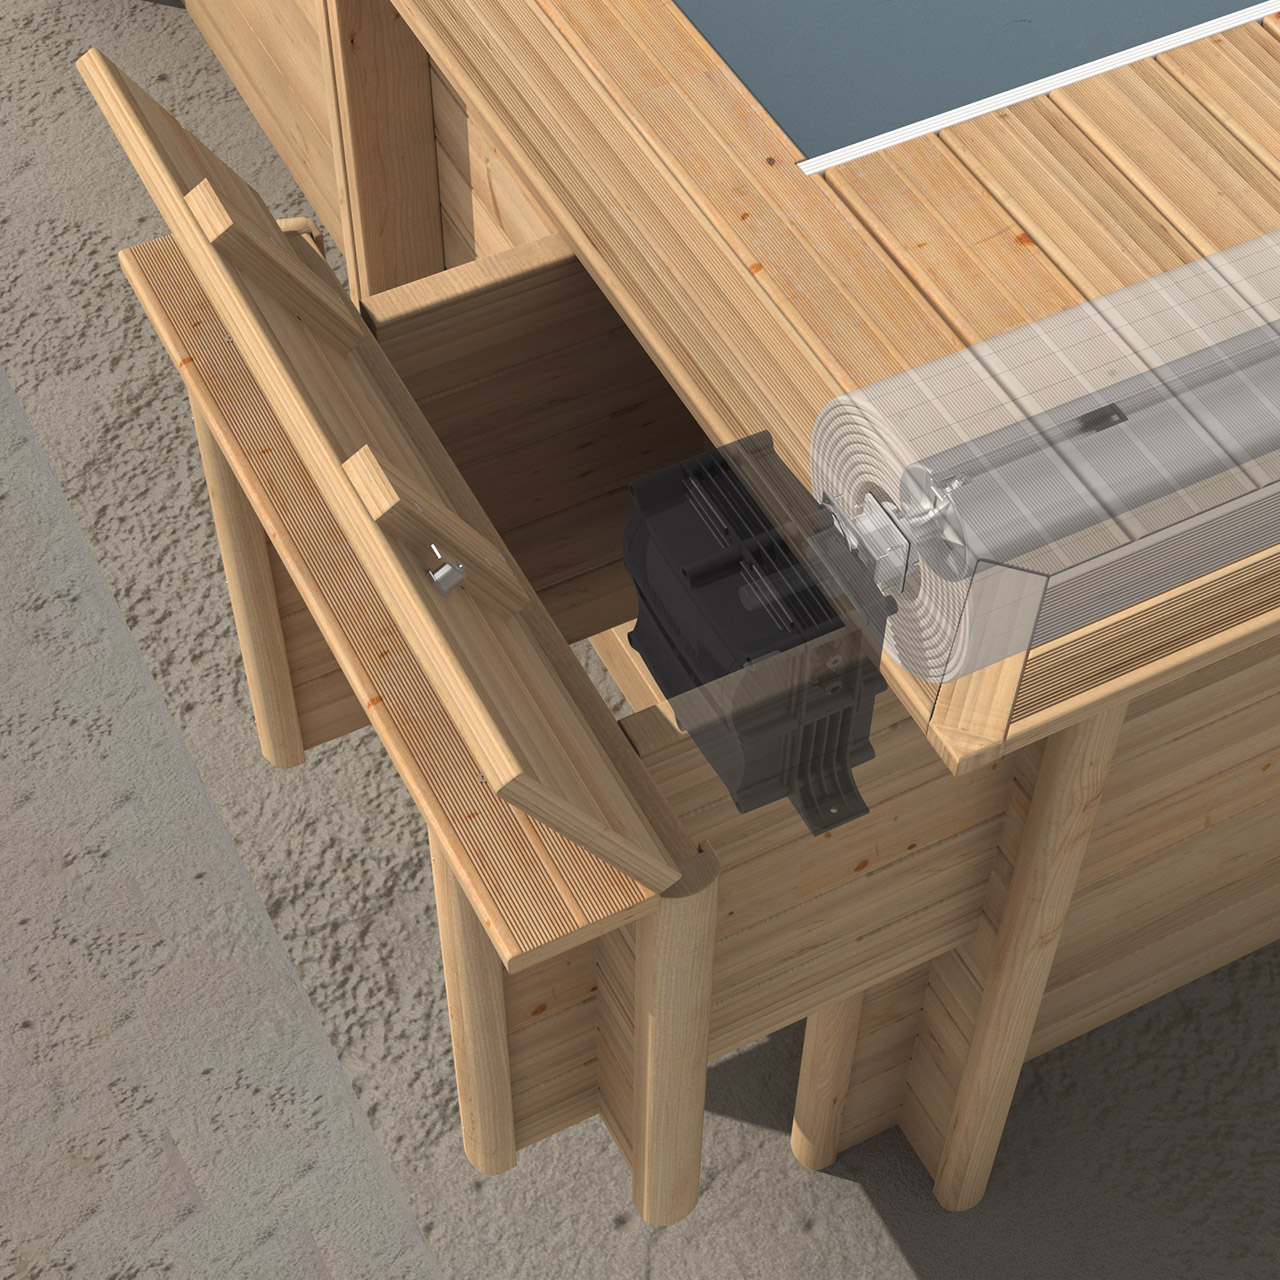 Holzschacht für eingebaute Urban Pool XL 6,5 x 3,5